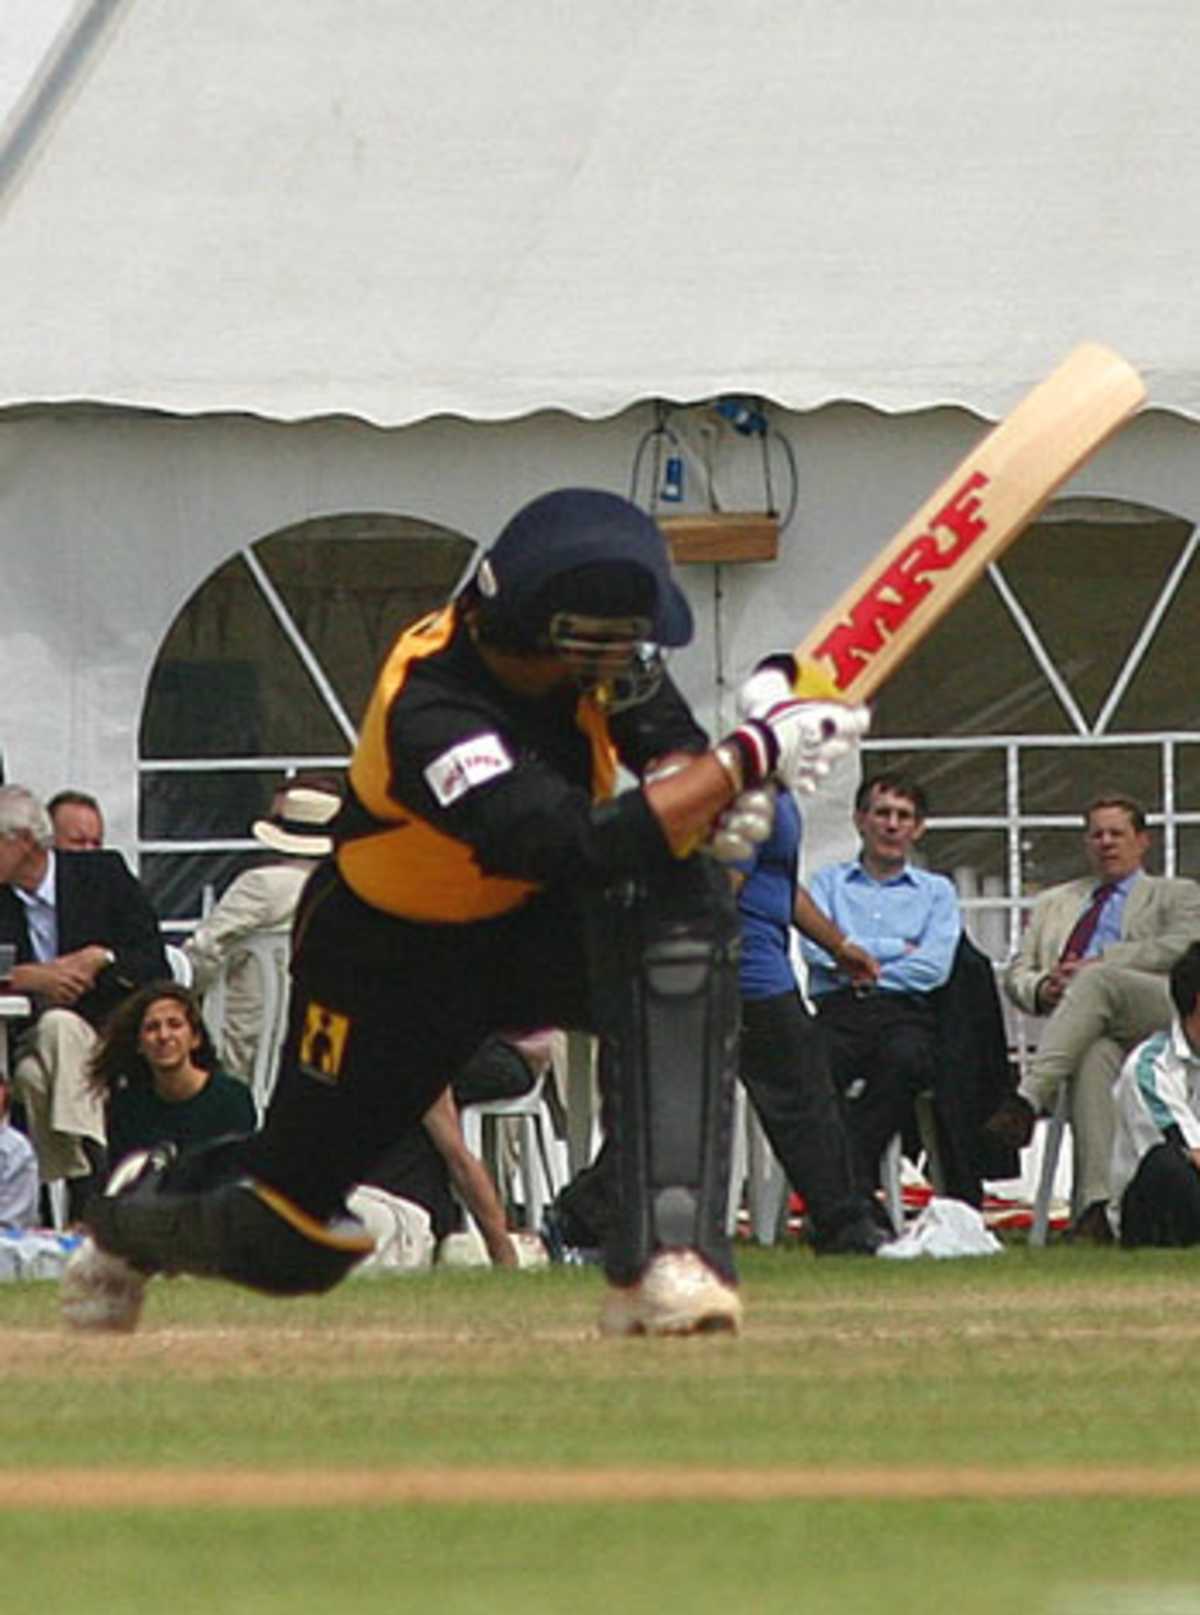 Sachin Tendulkar sweeps during his 155, Cambridge University v Lashings World XI, Fenner's, June 21, 2006